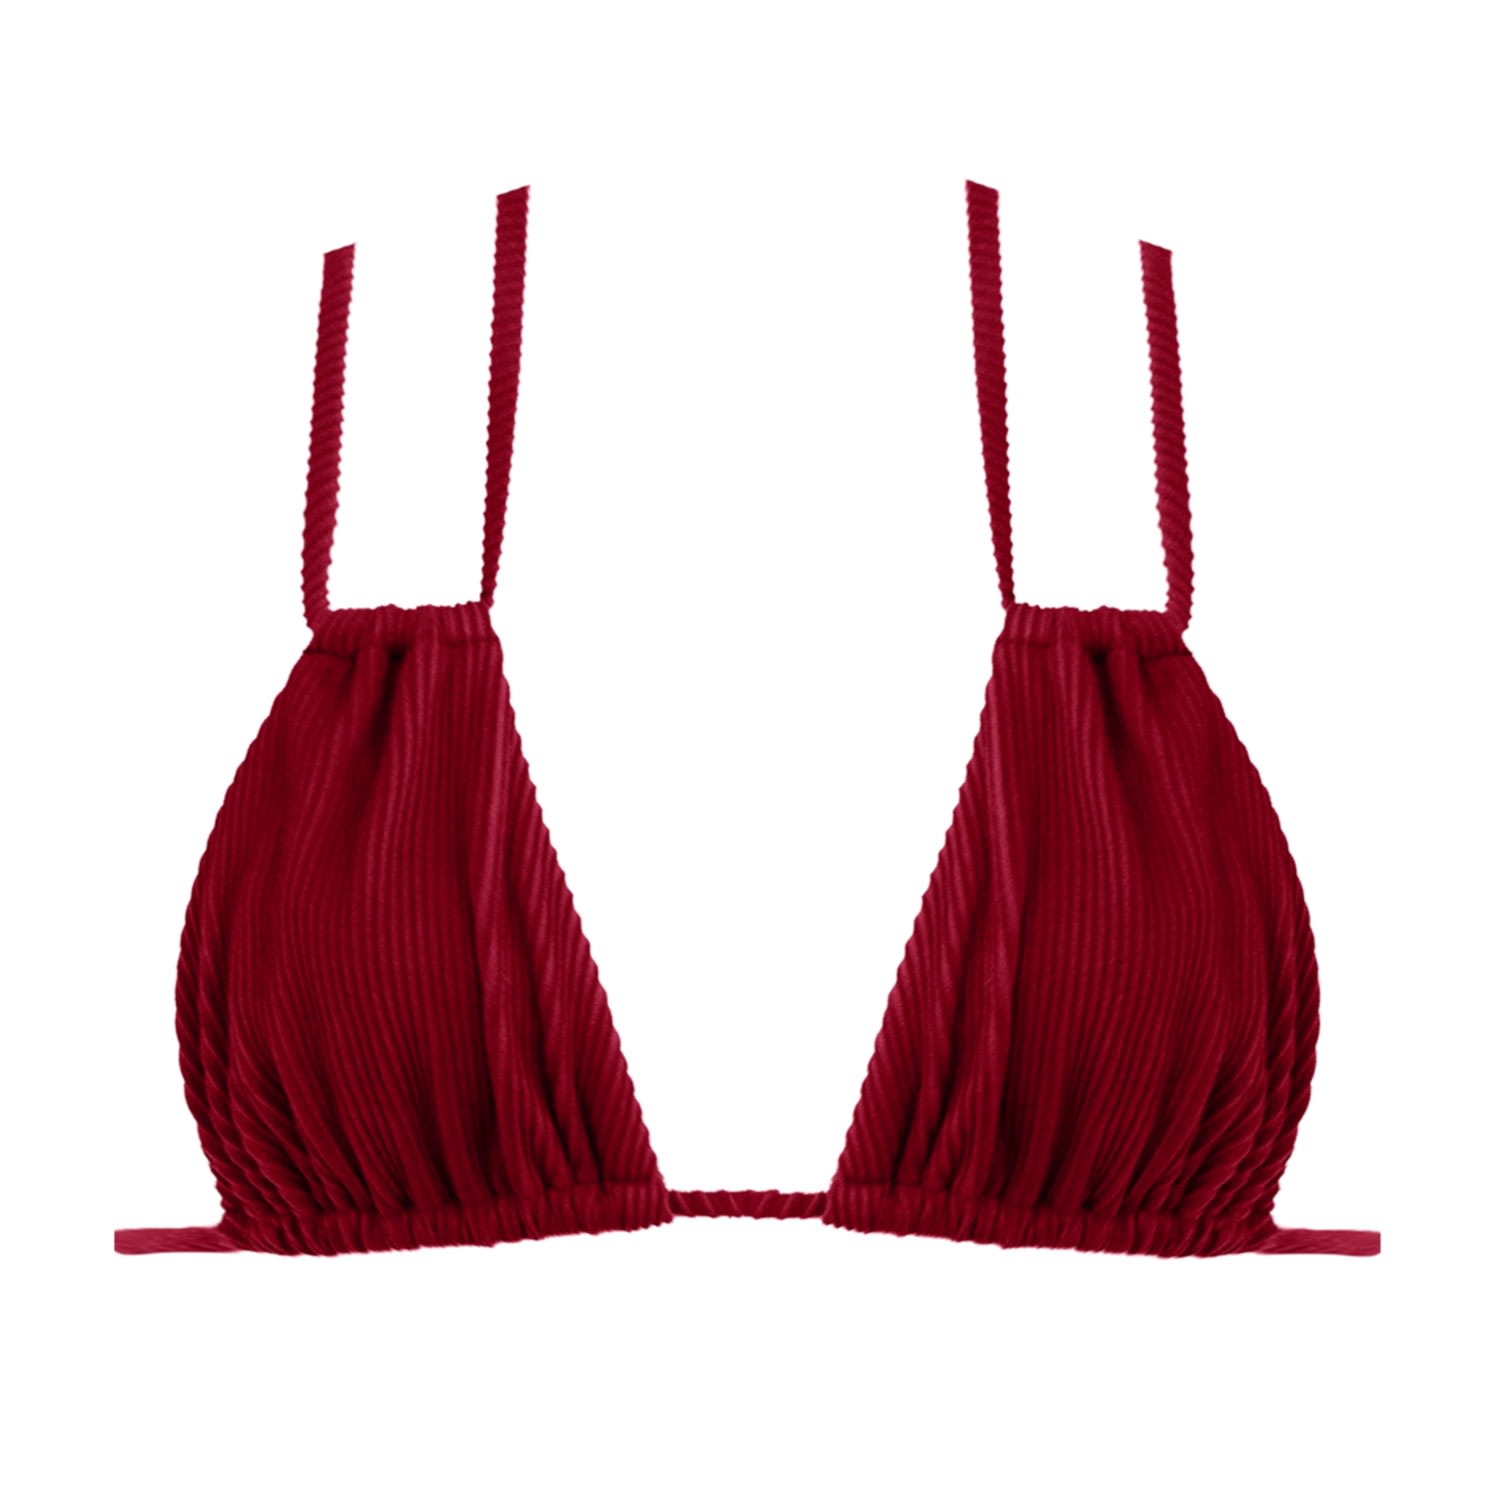 Women's Portofino Strappy Bikini Top - Red Small LEONESSA Lingerie